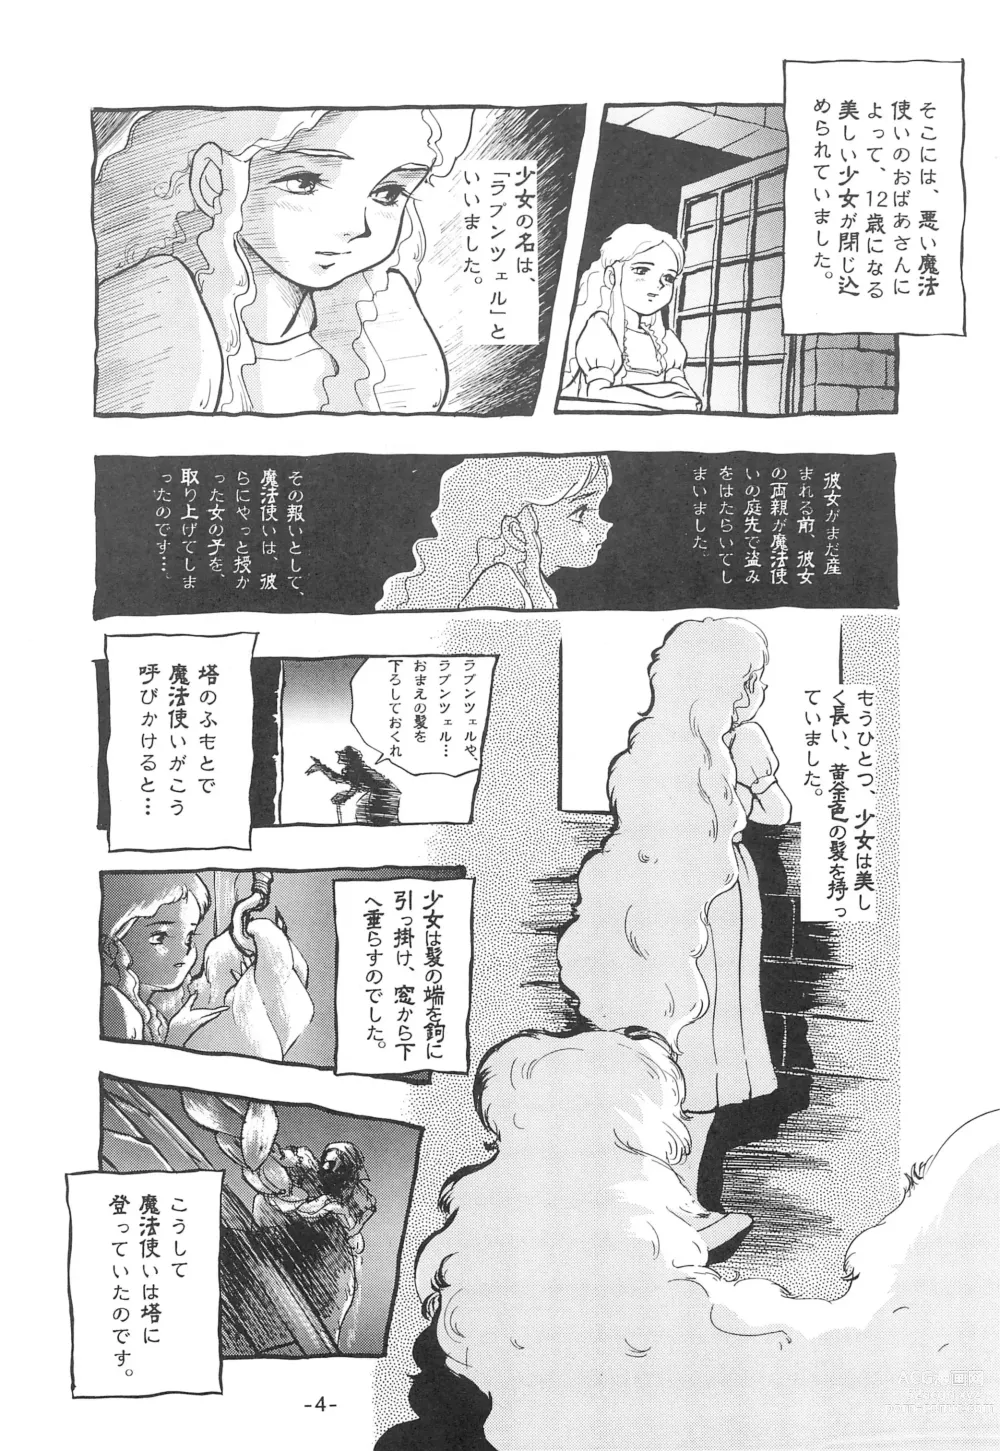 Page 6 of doujinshi Tousaku Douwa-shuu 1 Shirayukihime